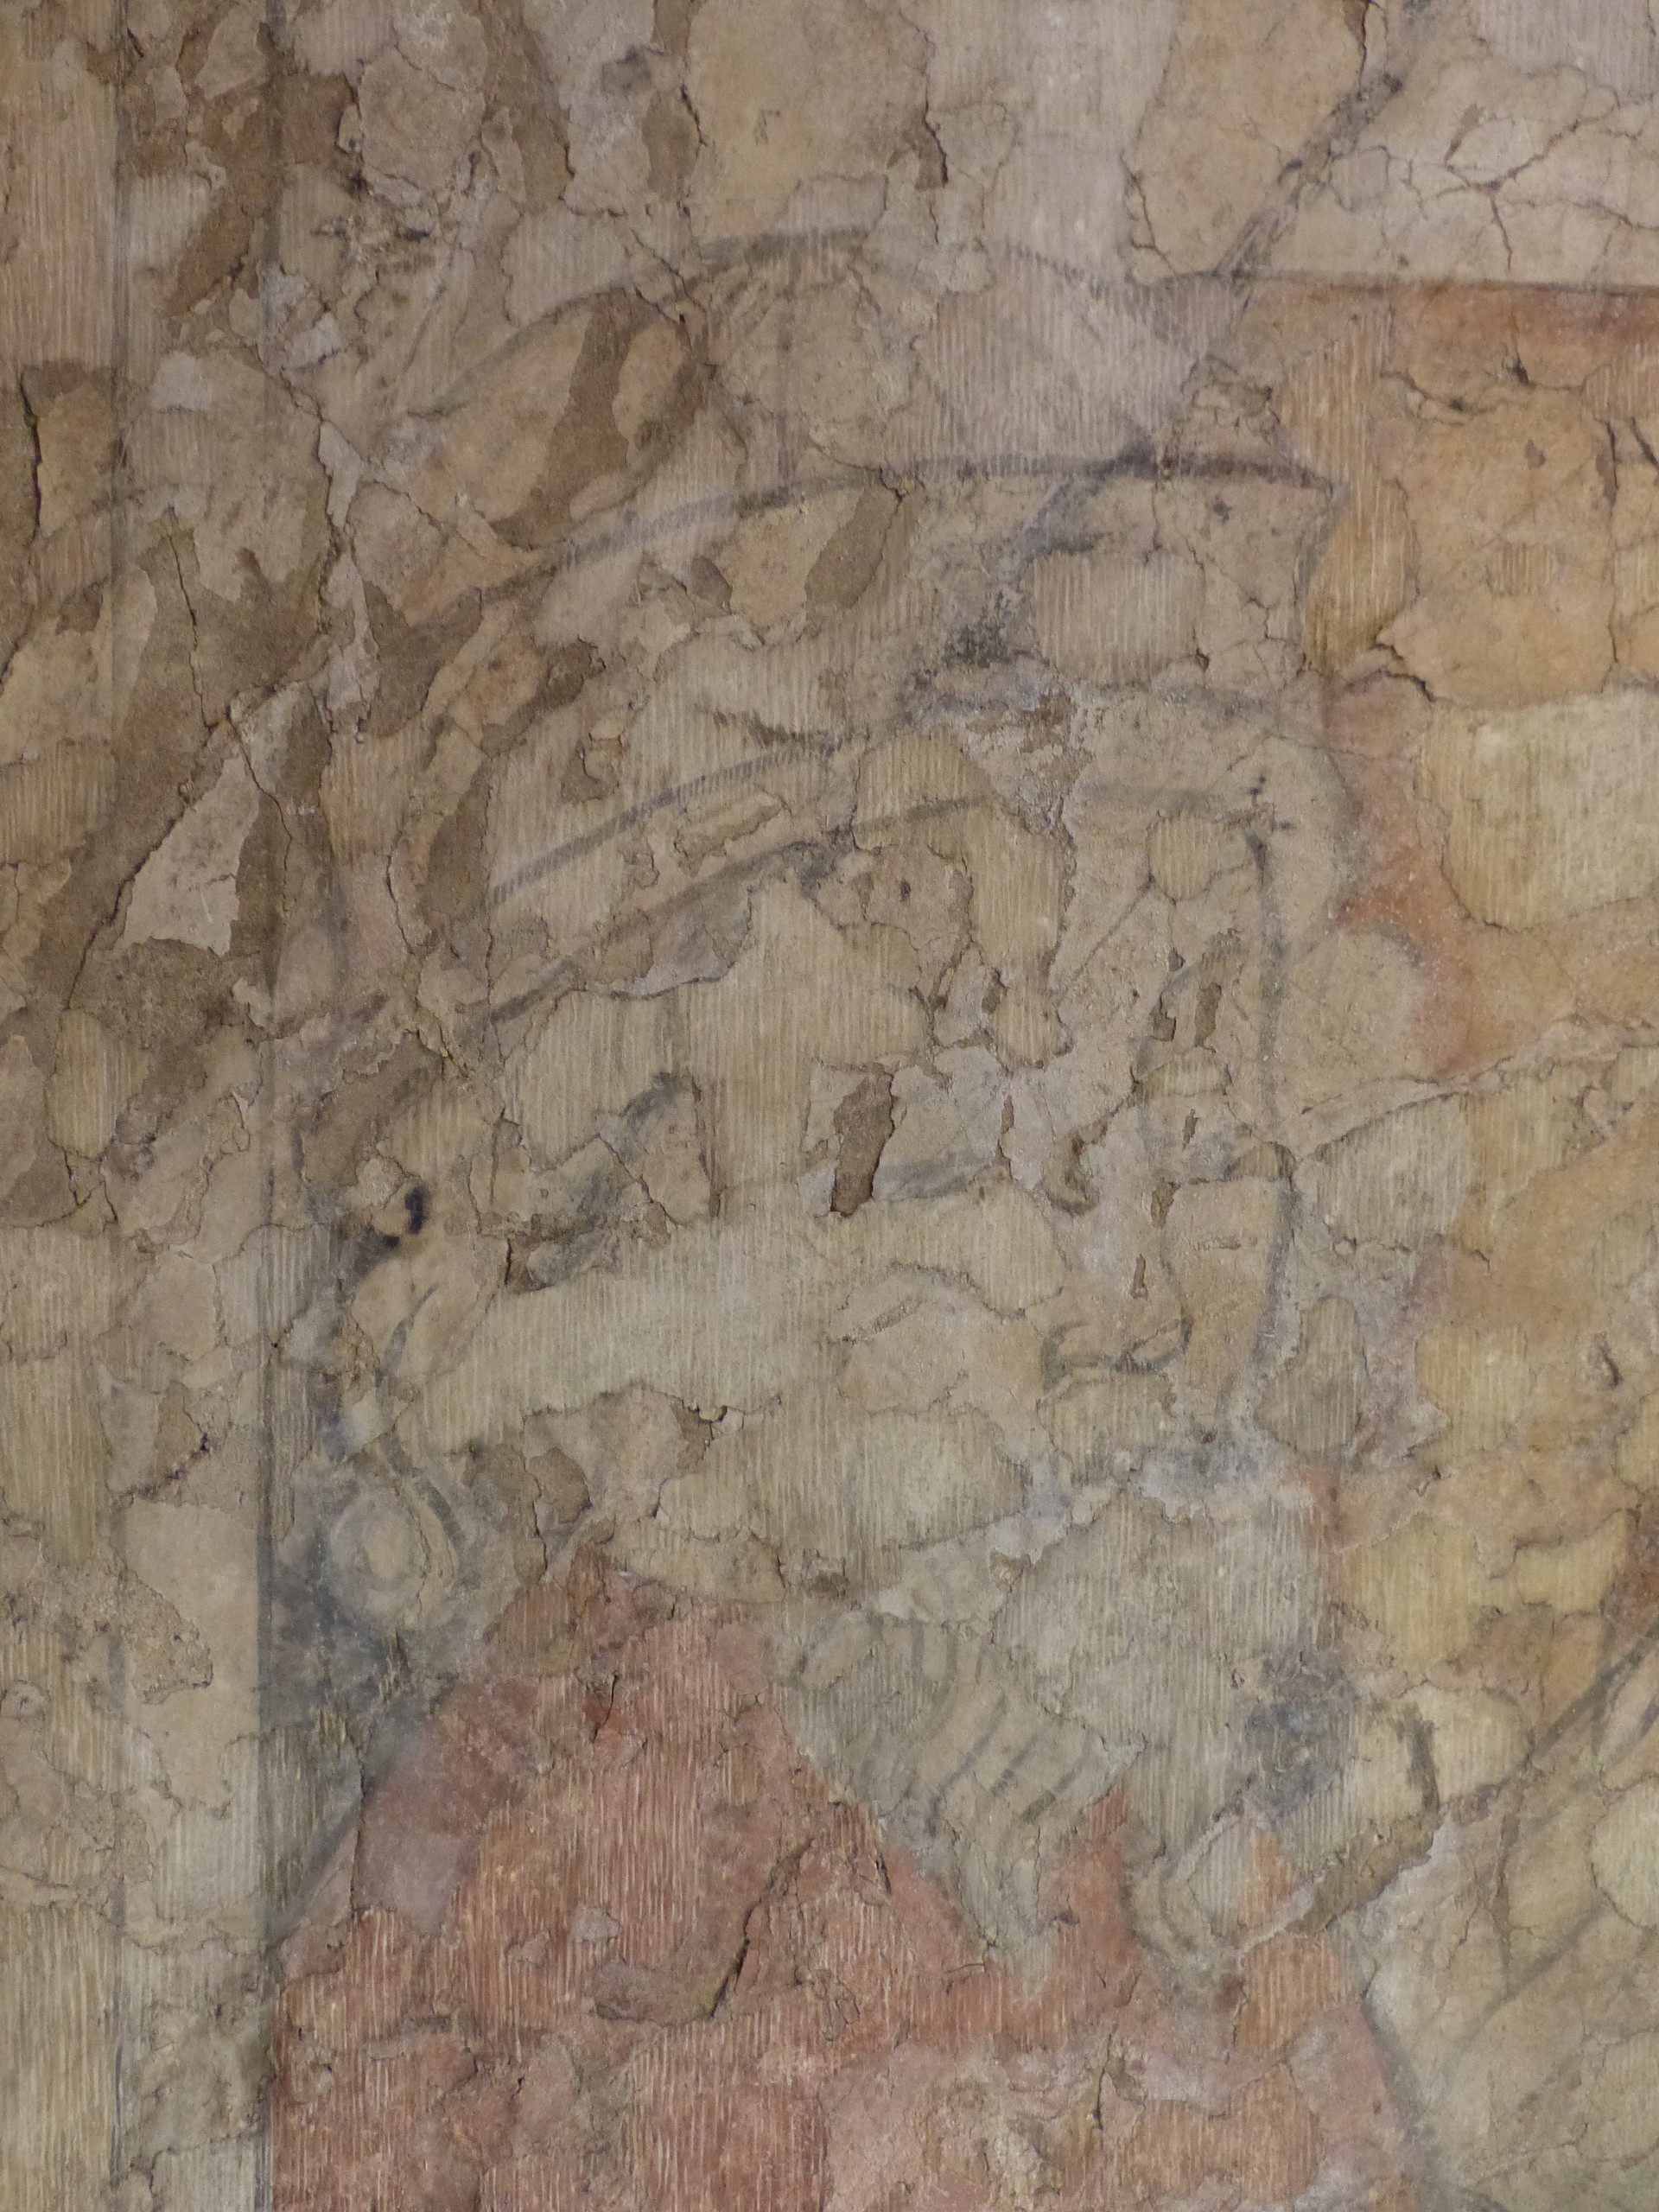 Középkori templomi freskőtöredék (Tapolcai Városi Múzeum CC BY-NC-SA)